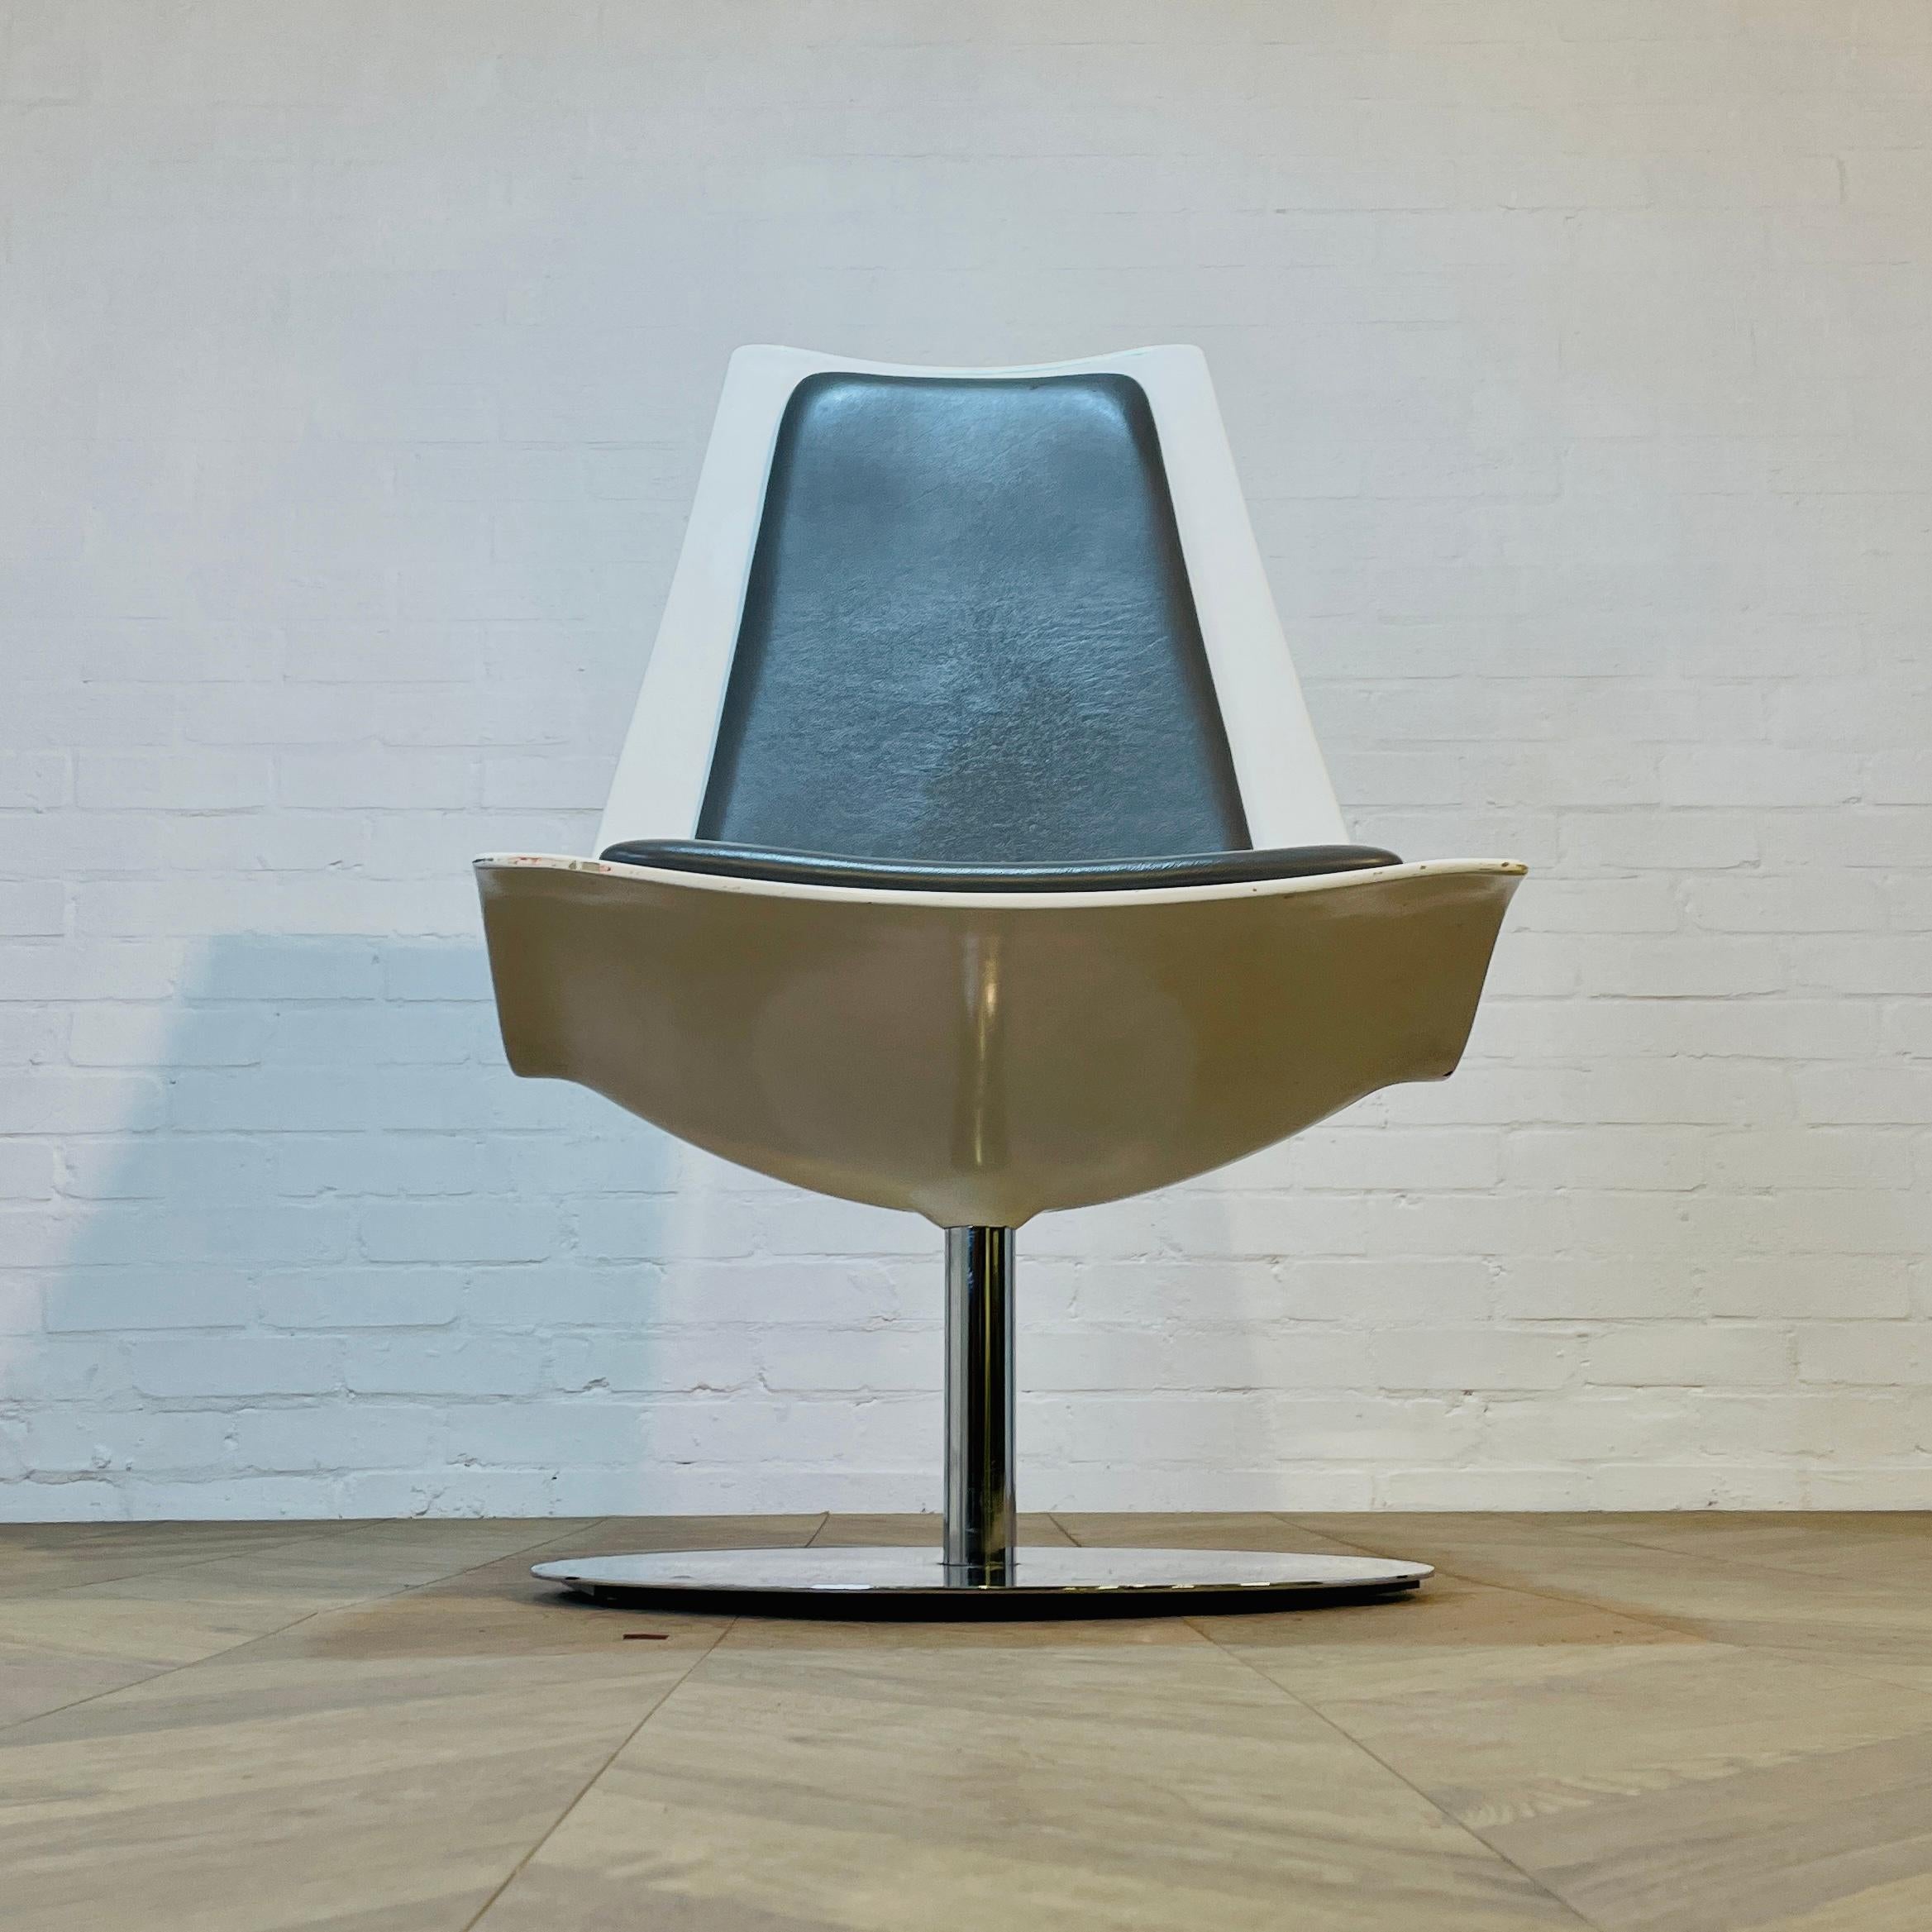 Chaise pivotante vintage XPO par BO Concept sur base chromée.

La chaise, qui est très lourde, est dotée de coussins d'assise en faux cuir gris et d'une coque dure blanche. Elle est en bon état vintage, avec de légères marques et éraflures sur la